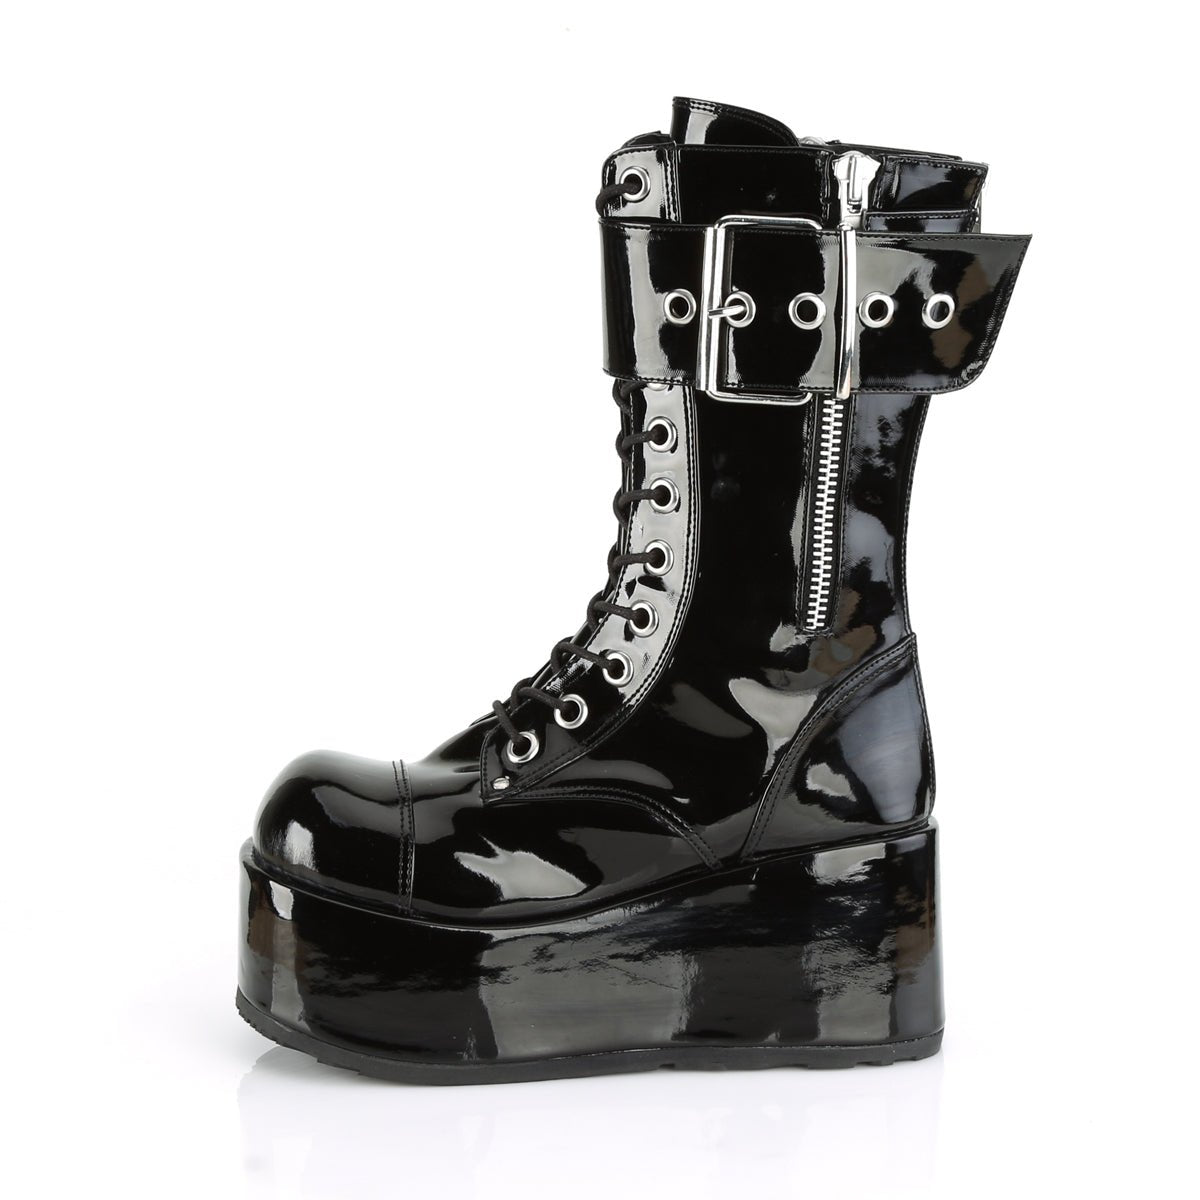 Unisex Platform Boots & Shoes